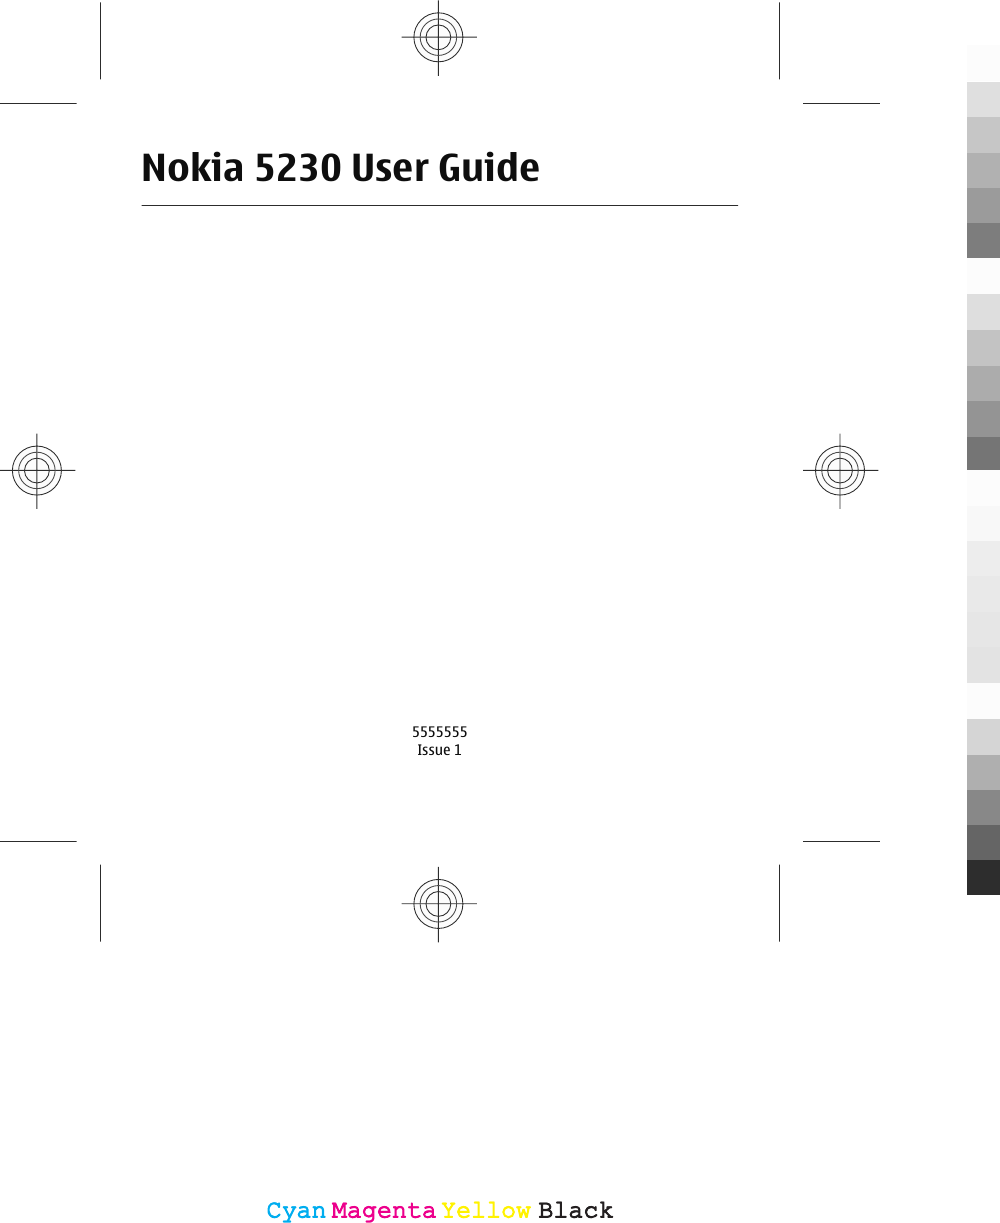 Nokia 5230 User Guide5555555Issue 1CyanCyanMagentaMagentaYellowYellowBlackBlack